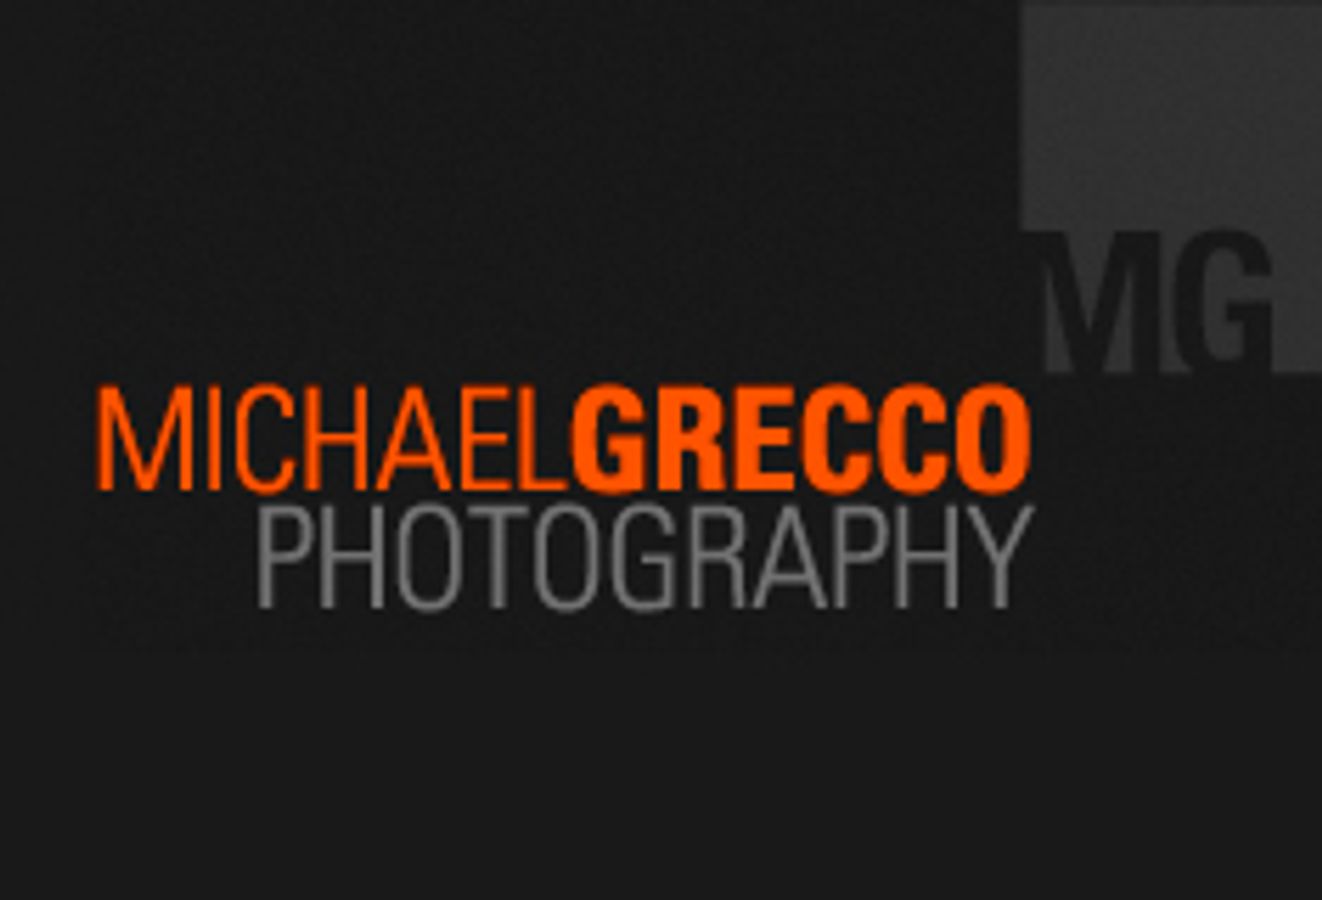 Michael Grecco